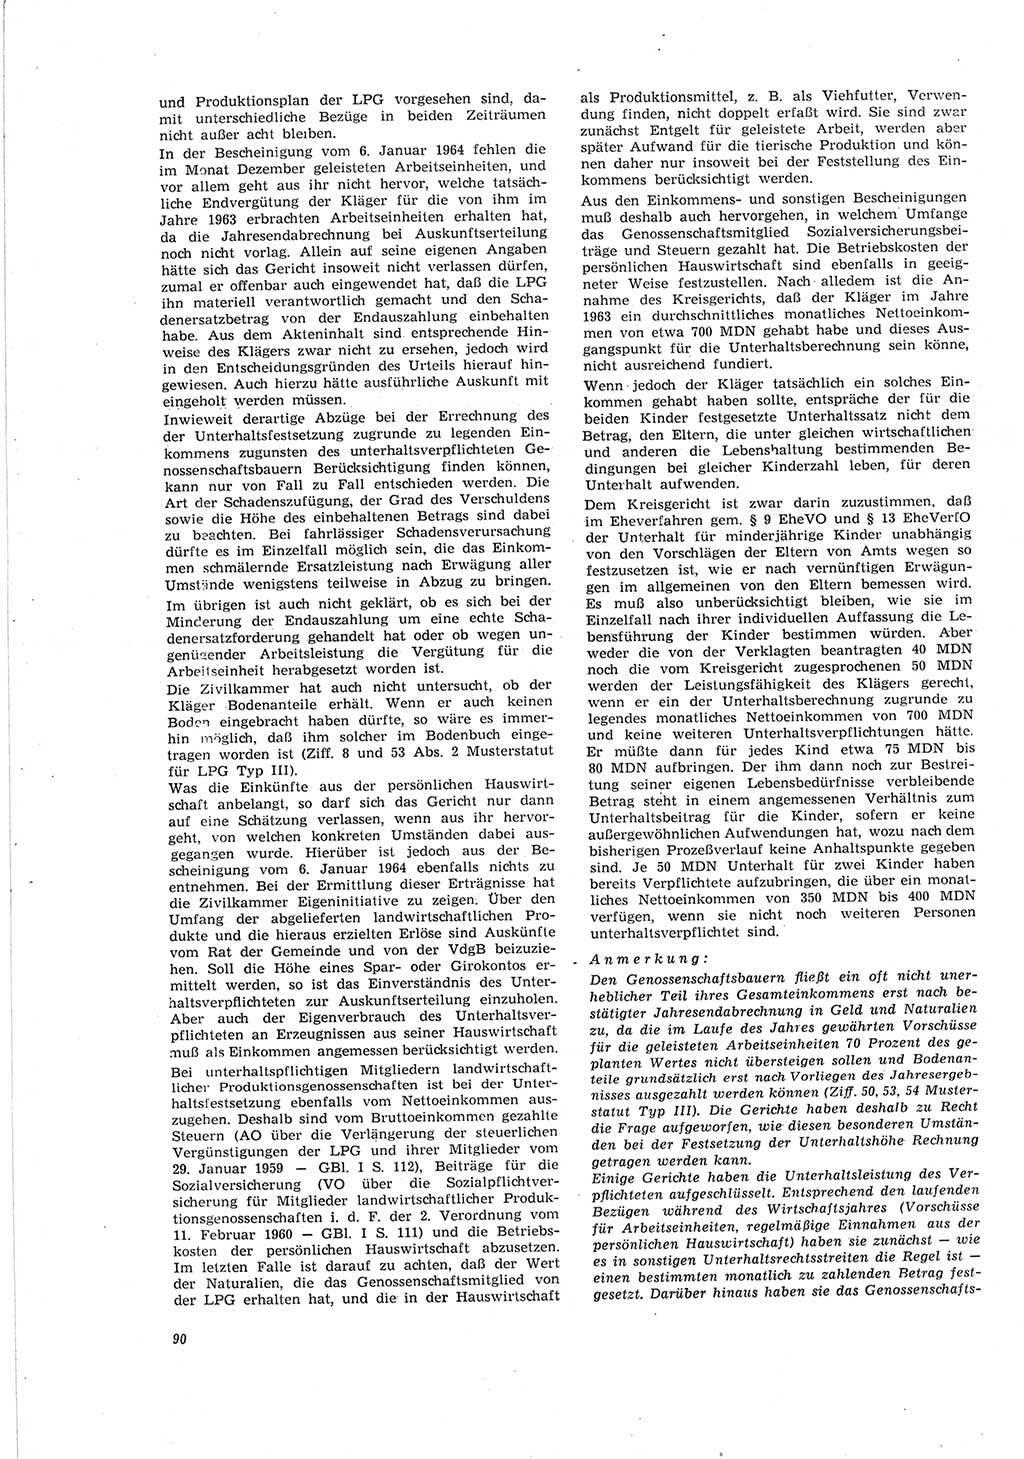 Neue Justiz (NJ), Zeitschrift für Recht und Rechtswissenschaft [Deutsche Demokratische Republik (DDR)], 19. Jahrgang 1965, Seite 90 (NJ DDR 1965, S. 90)